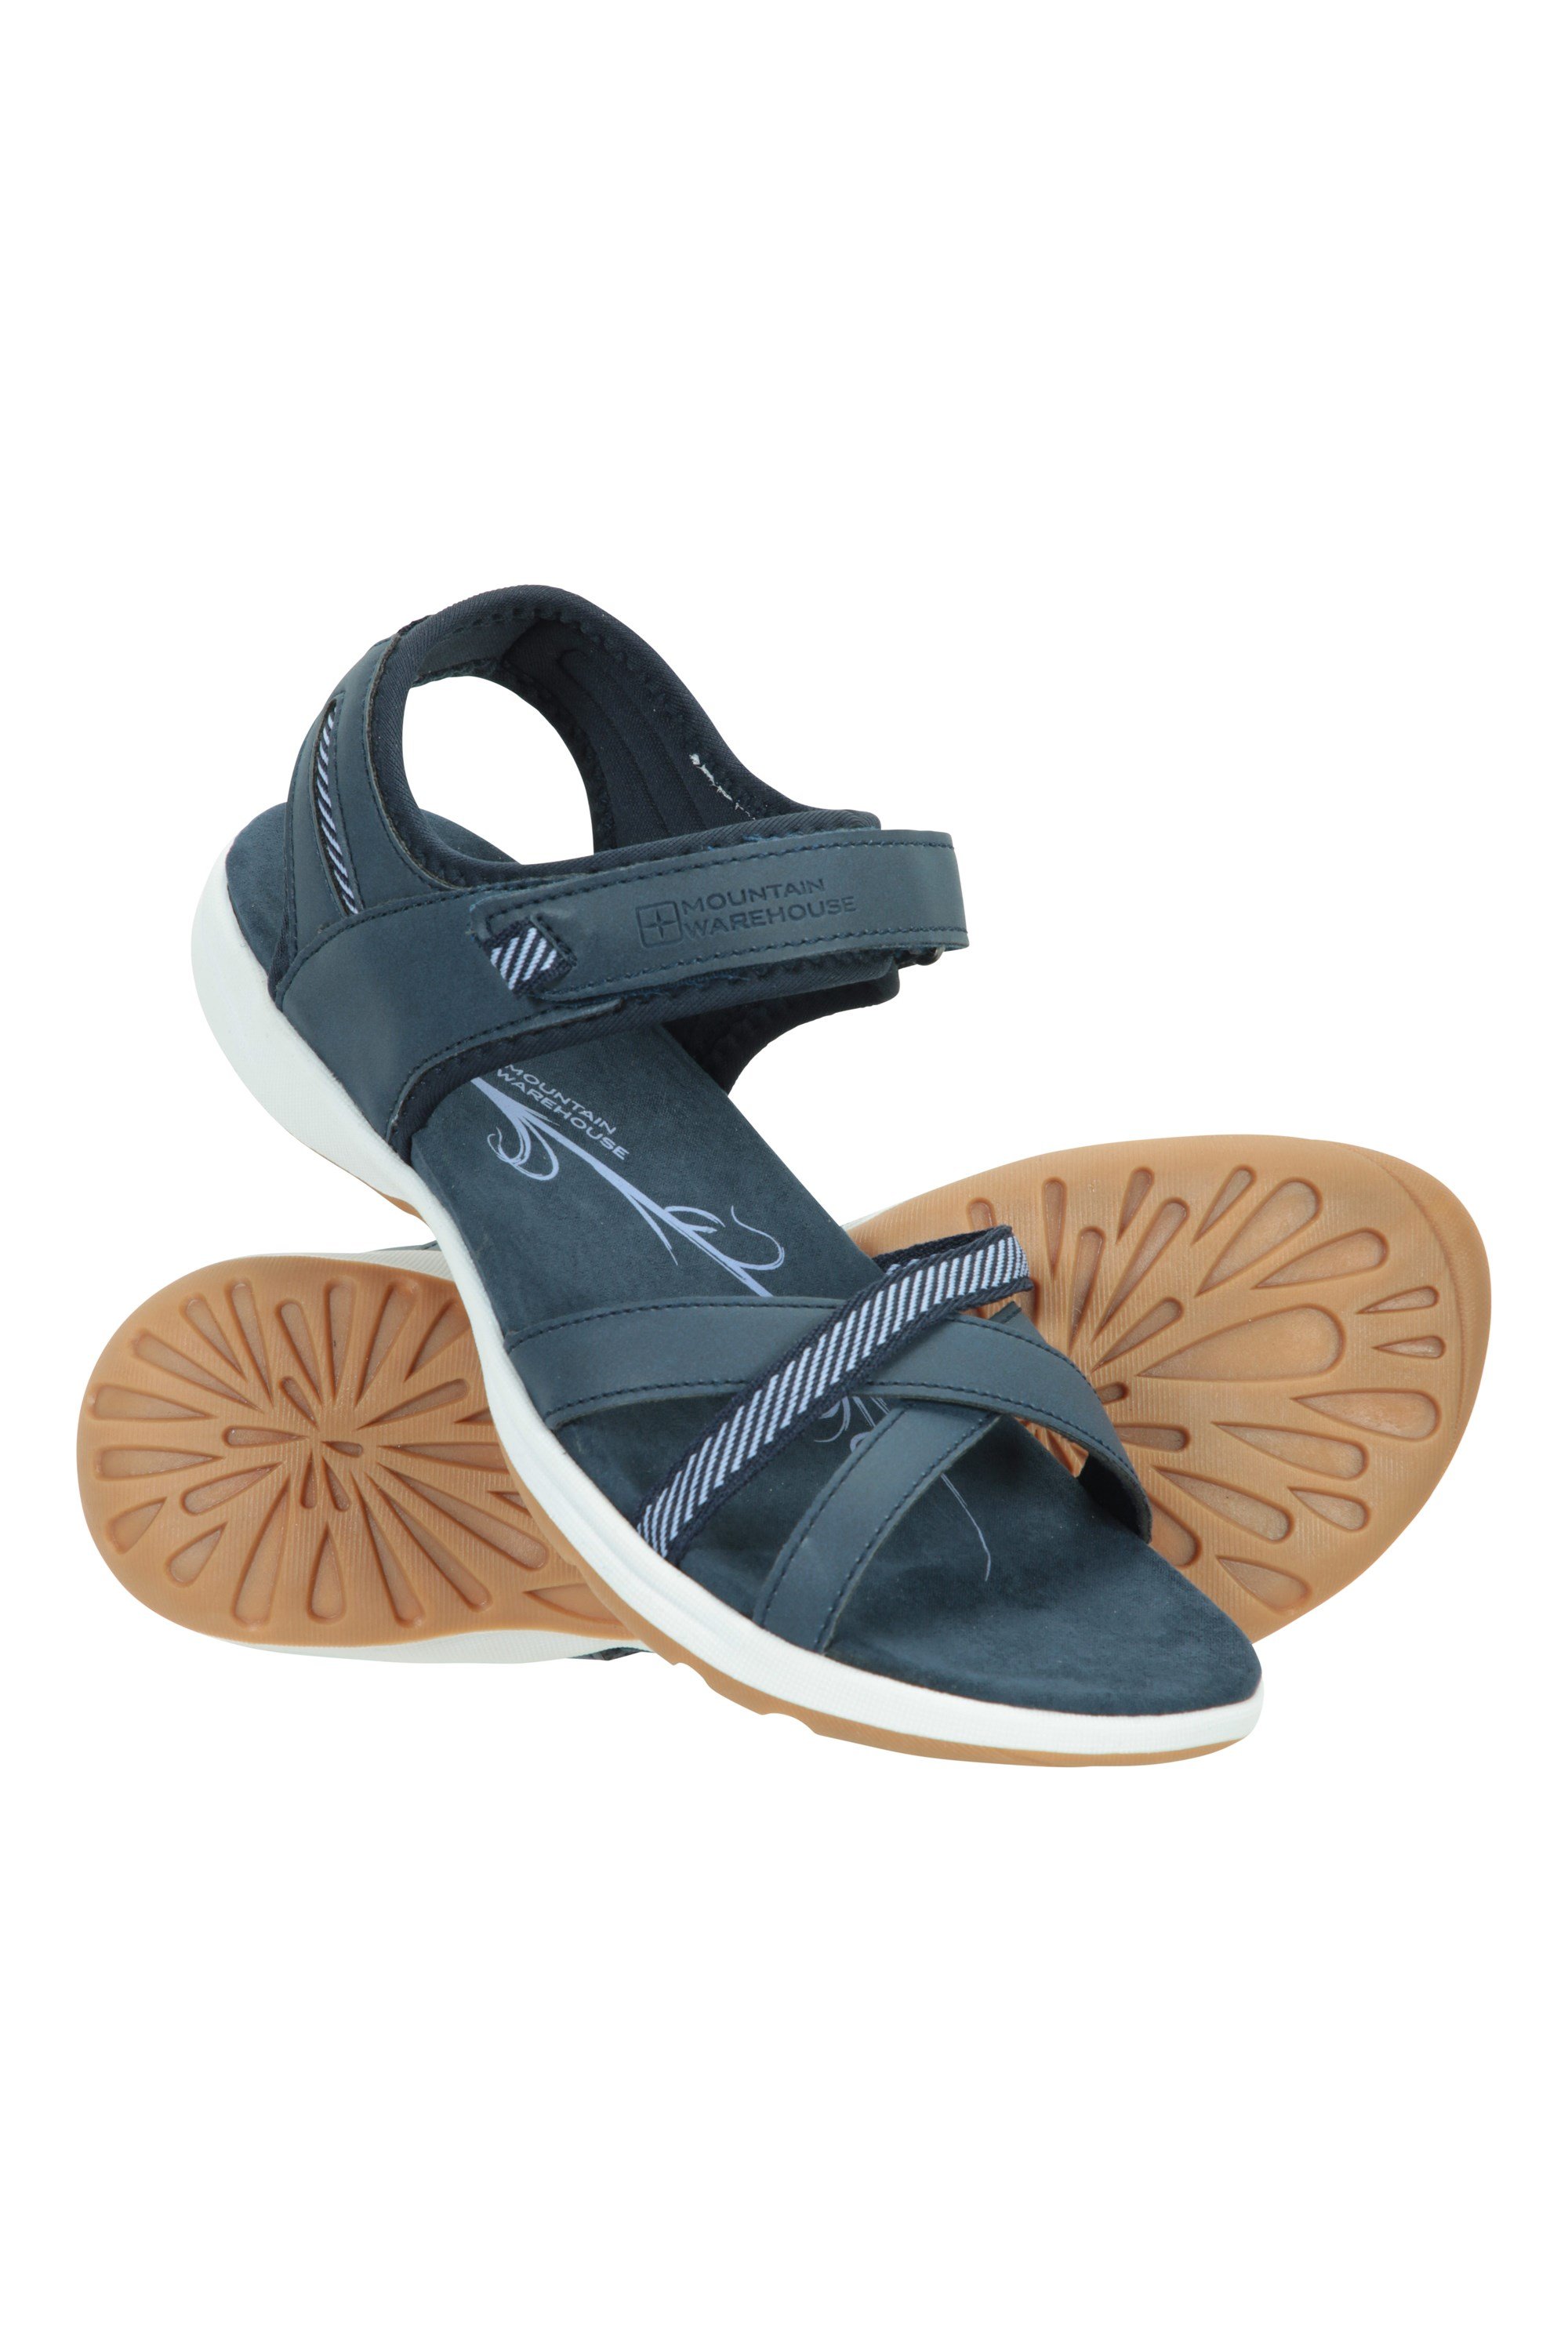 Lightweight Summer Sandals Mountain Warehouse Shark Clogs 